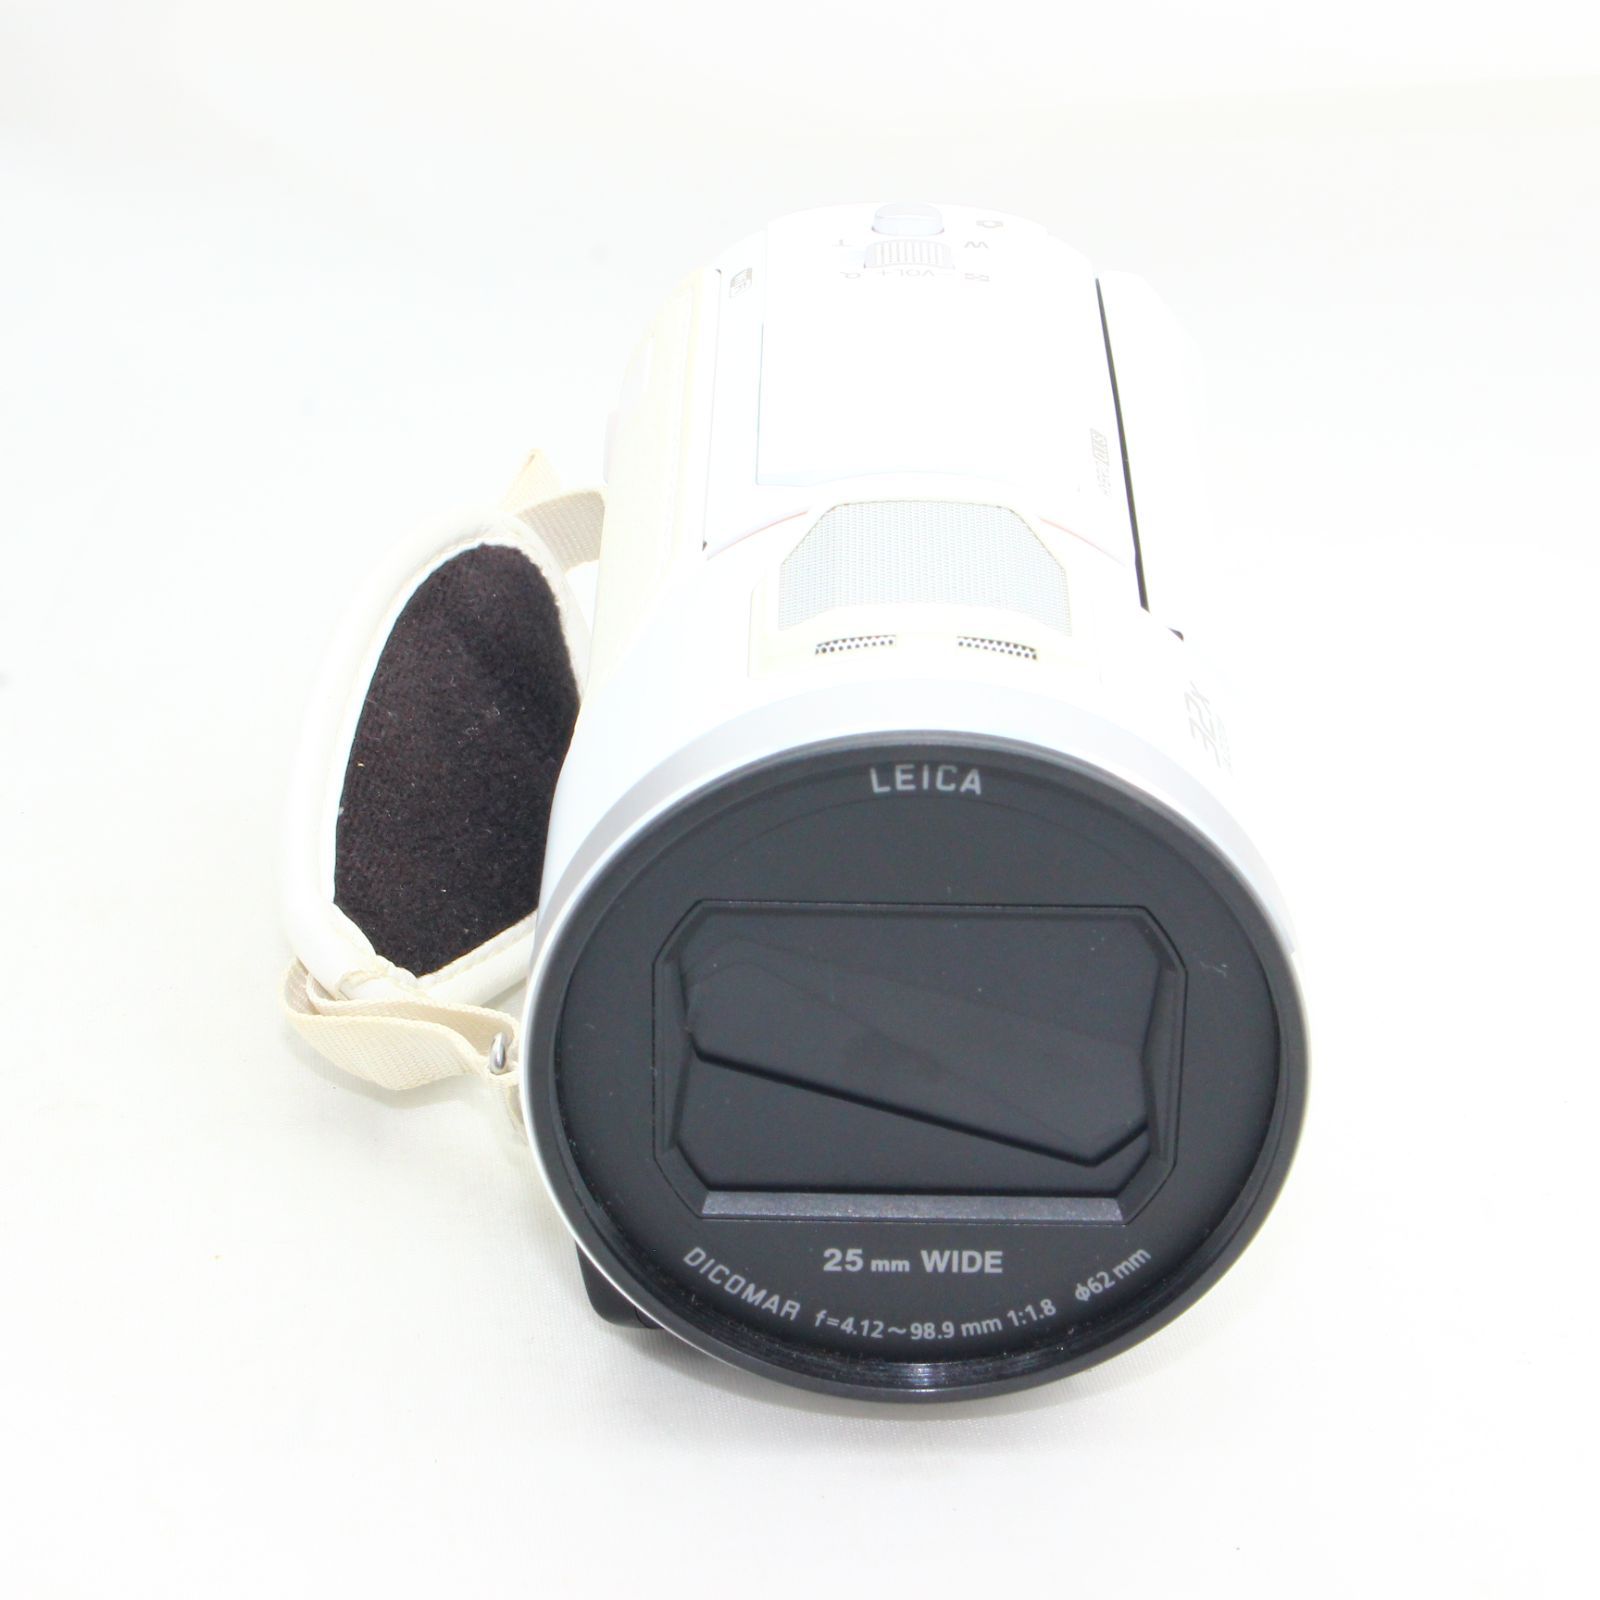 パナソニック 4K ビデオカメラ VX1M 64GB あとから補正 ホワイト HC